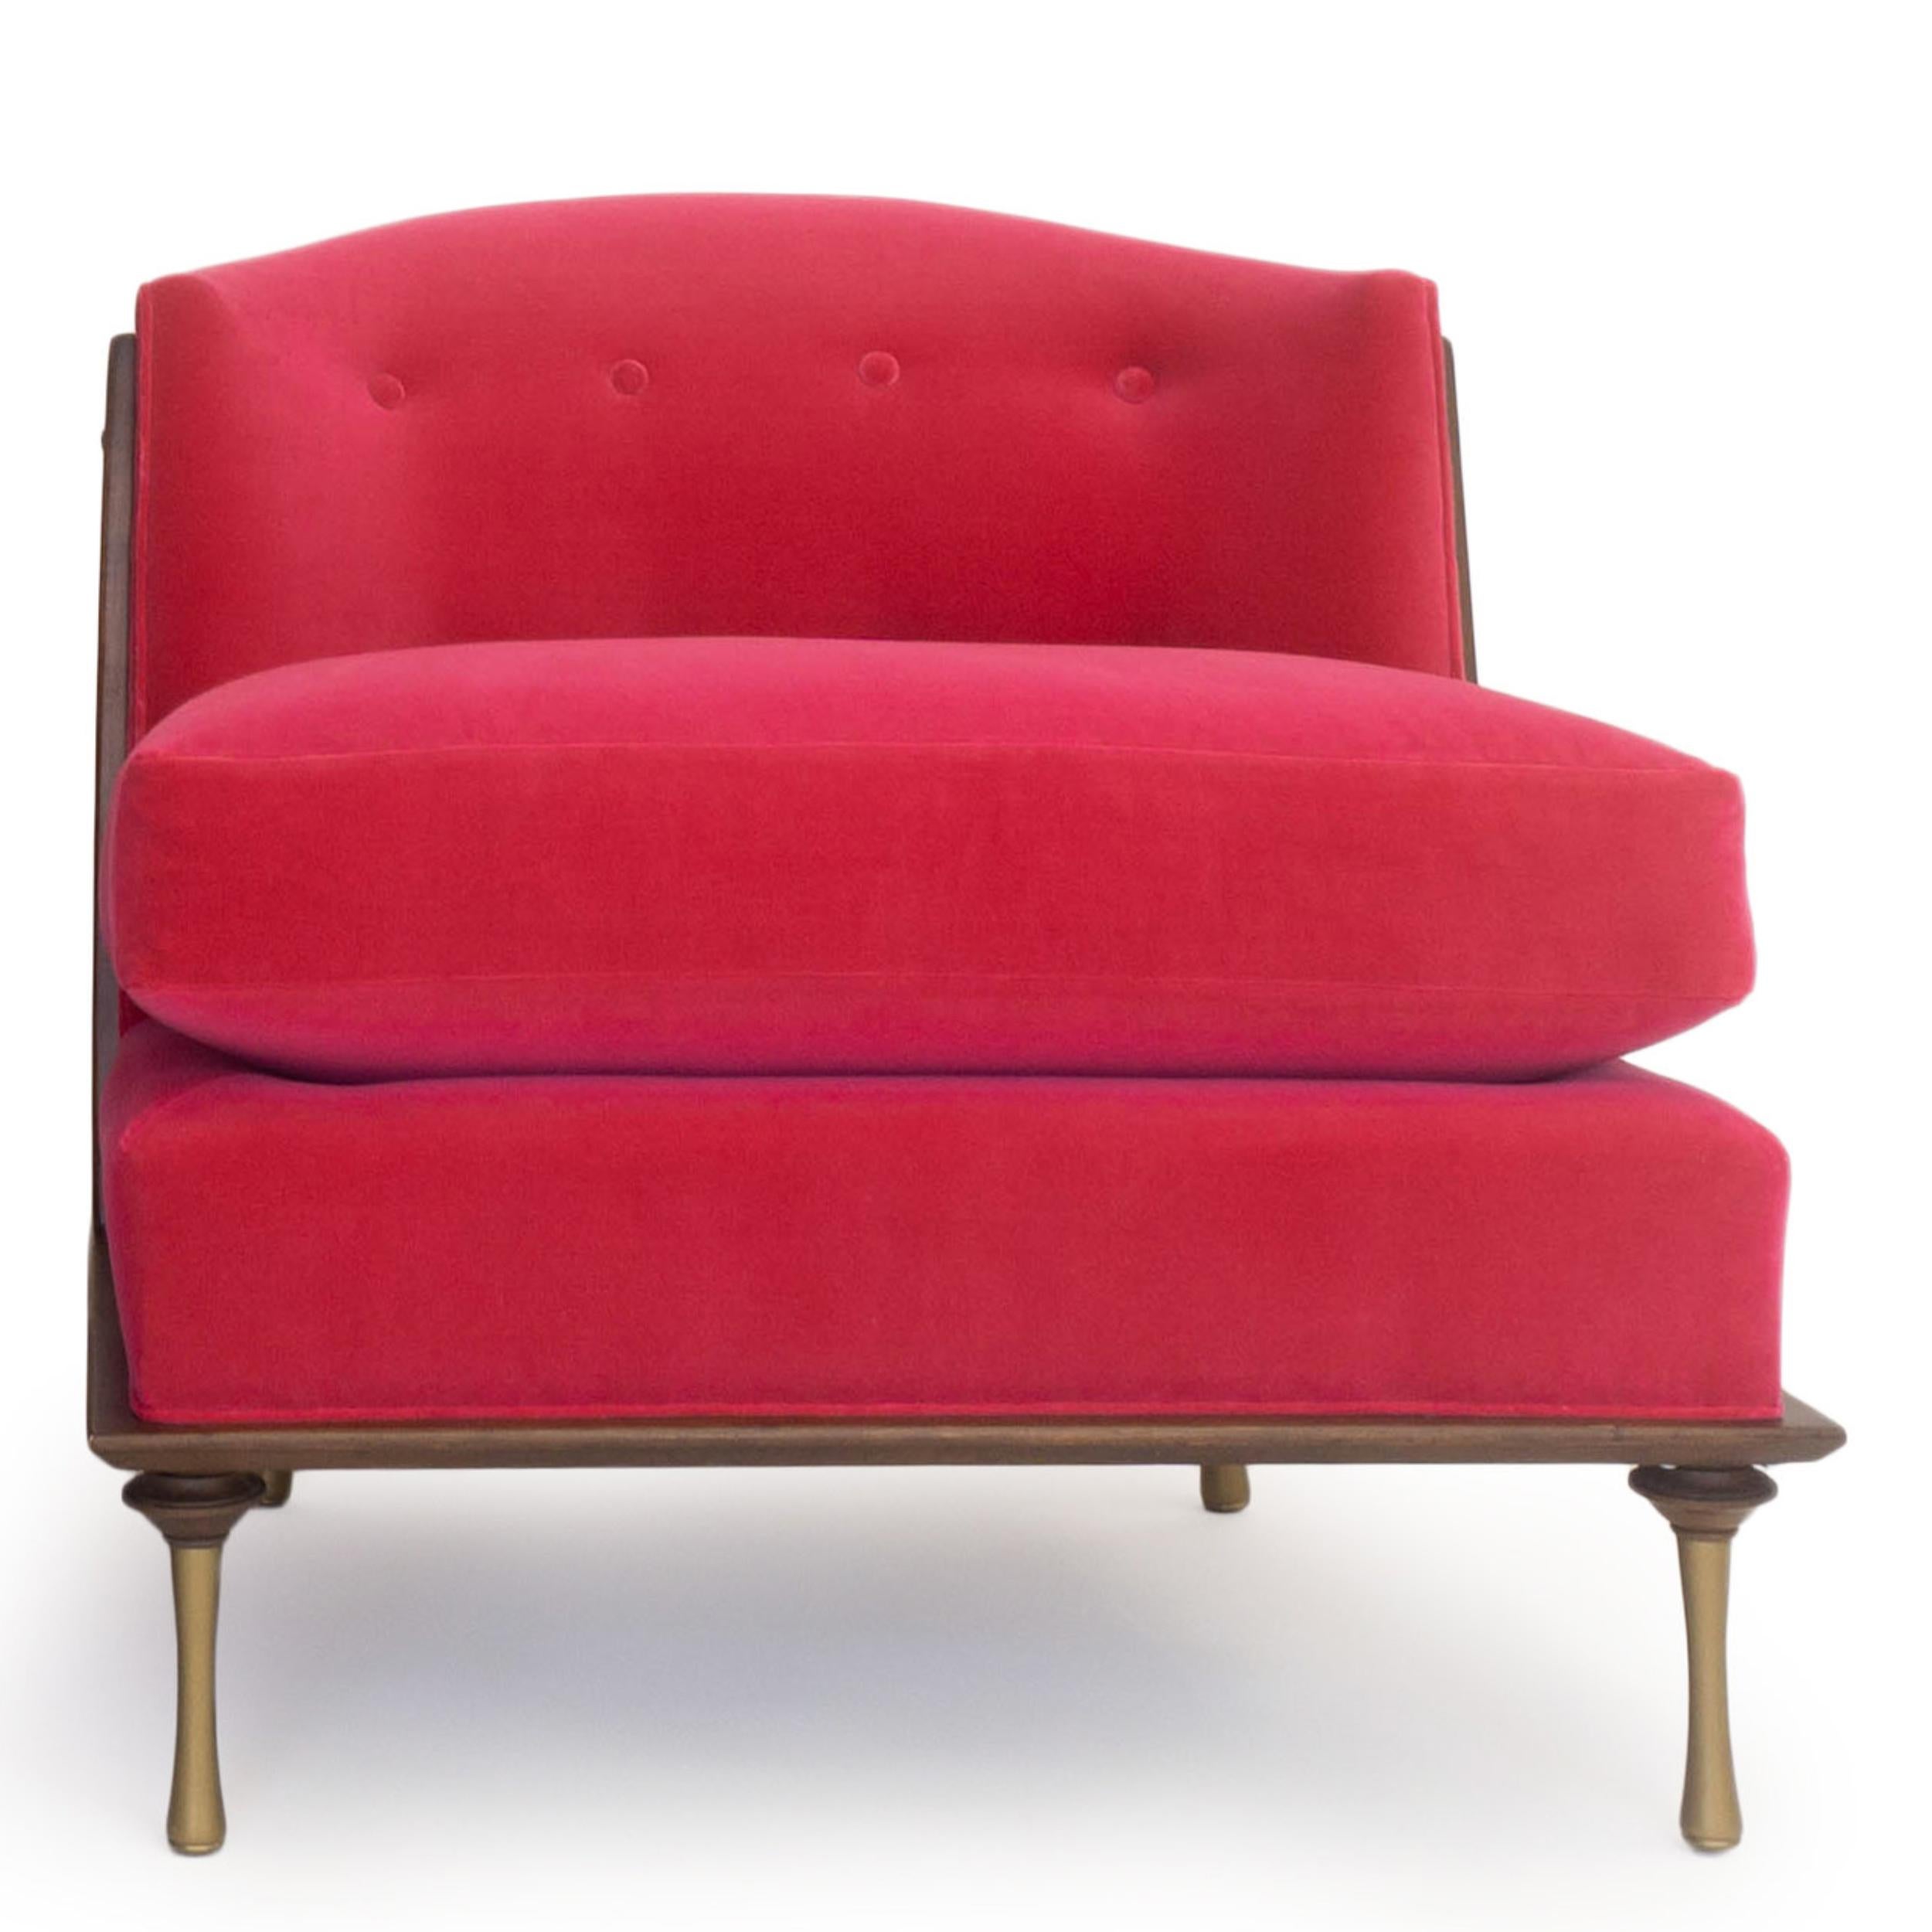 Cette chaise pantoufle d'inspiration Art Déco, recouverte de velours rose vif, présente un cadre en bois apparent avec une finition noyer, un coussin de dossier à boutons, des pieds peints en or et une assise épaisse. Une chaise super confortable